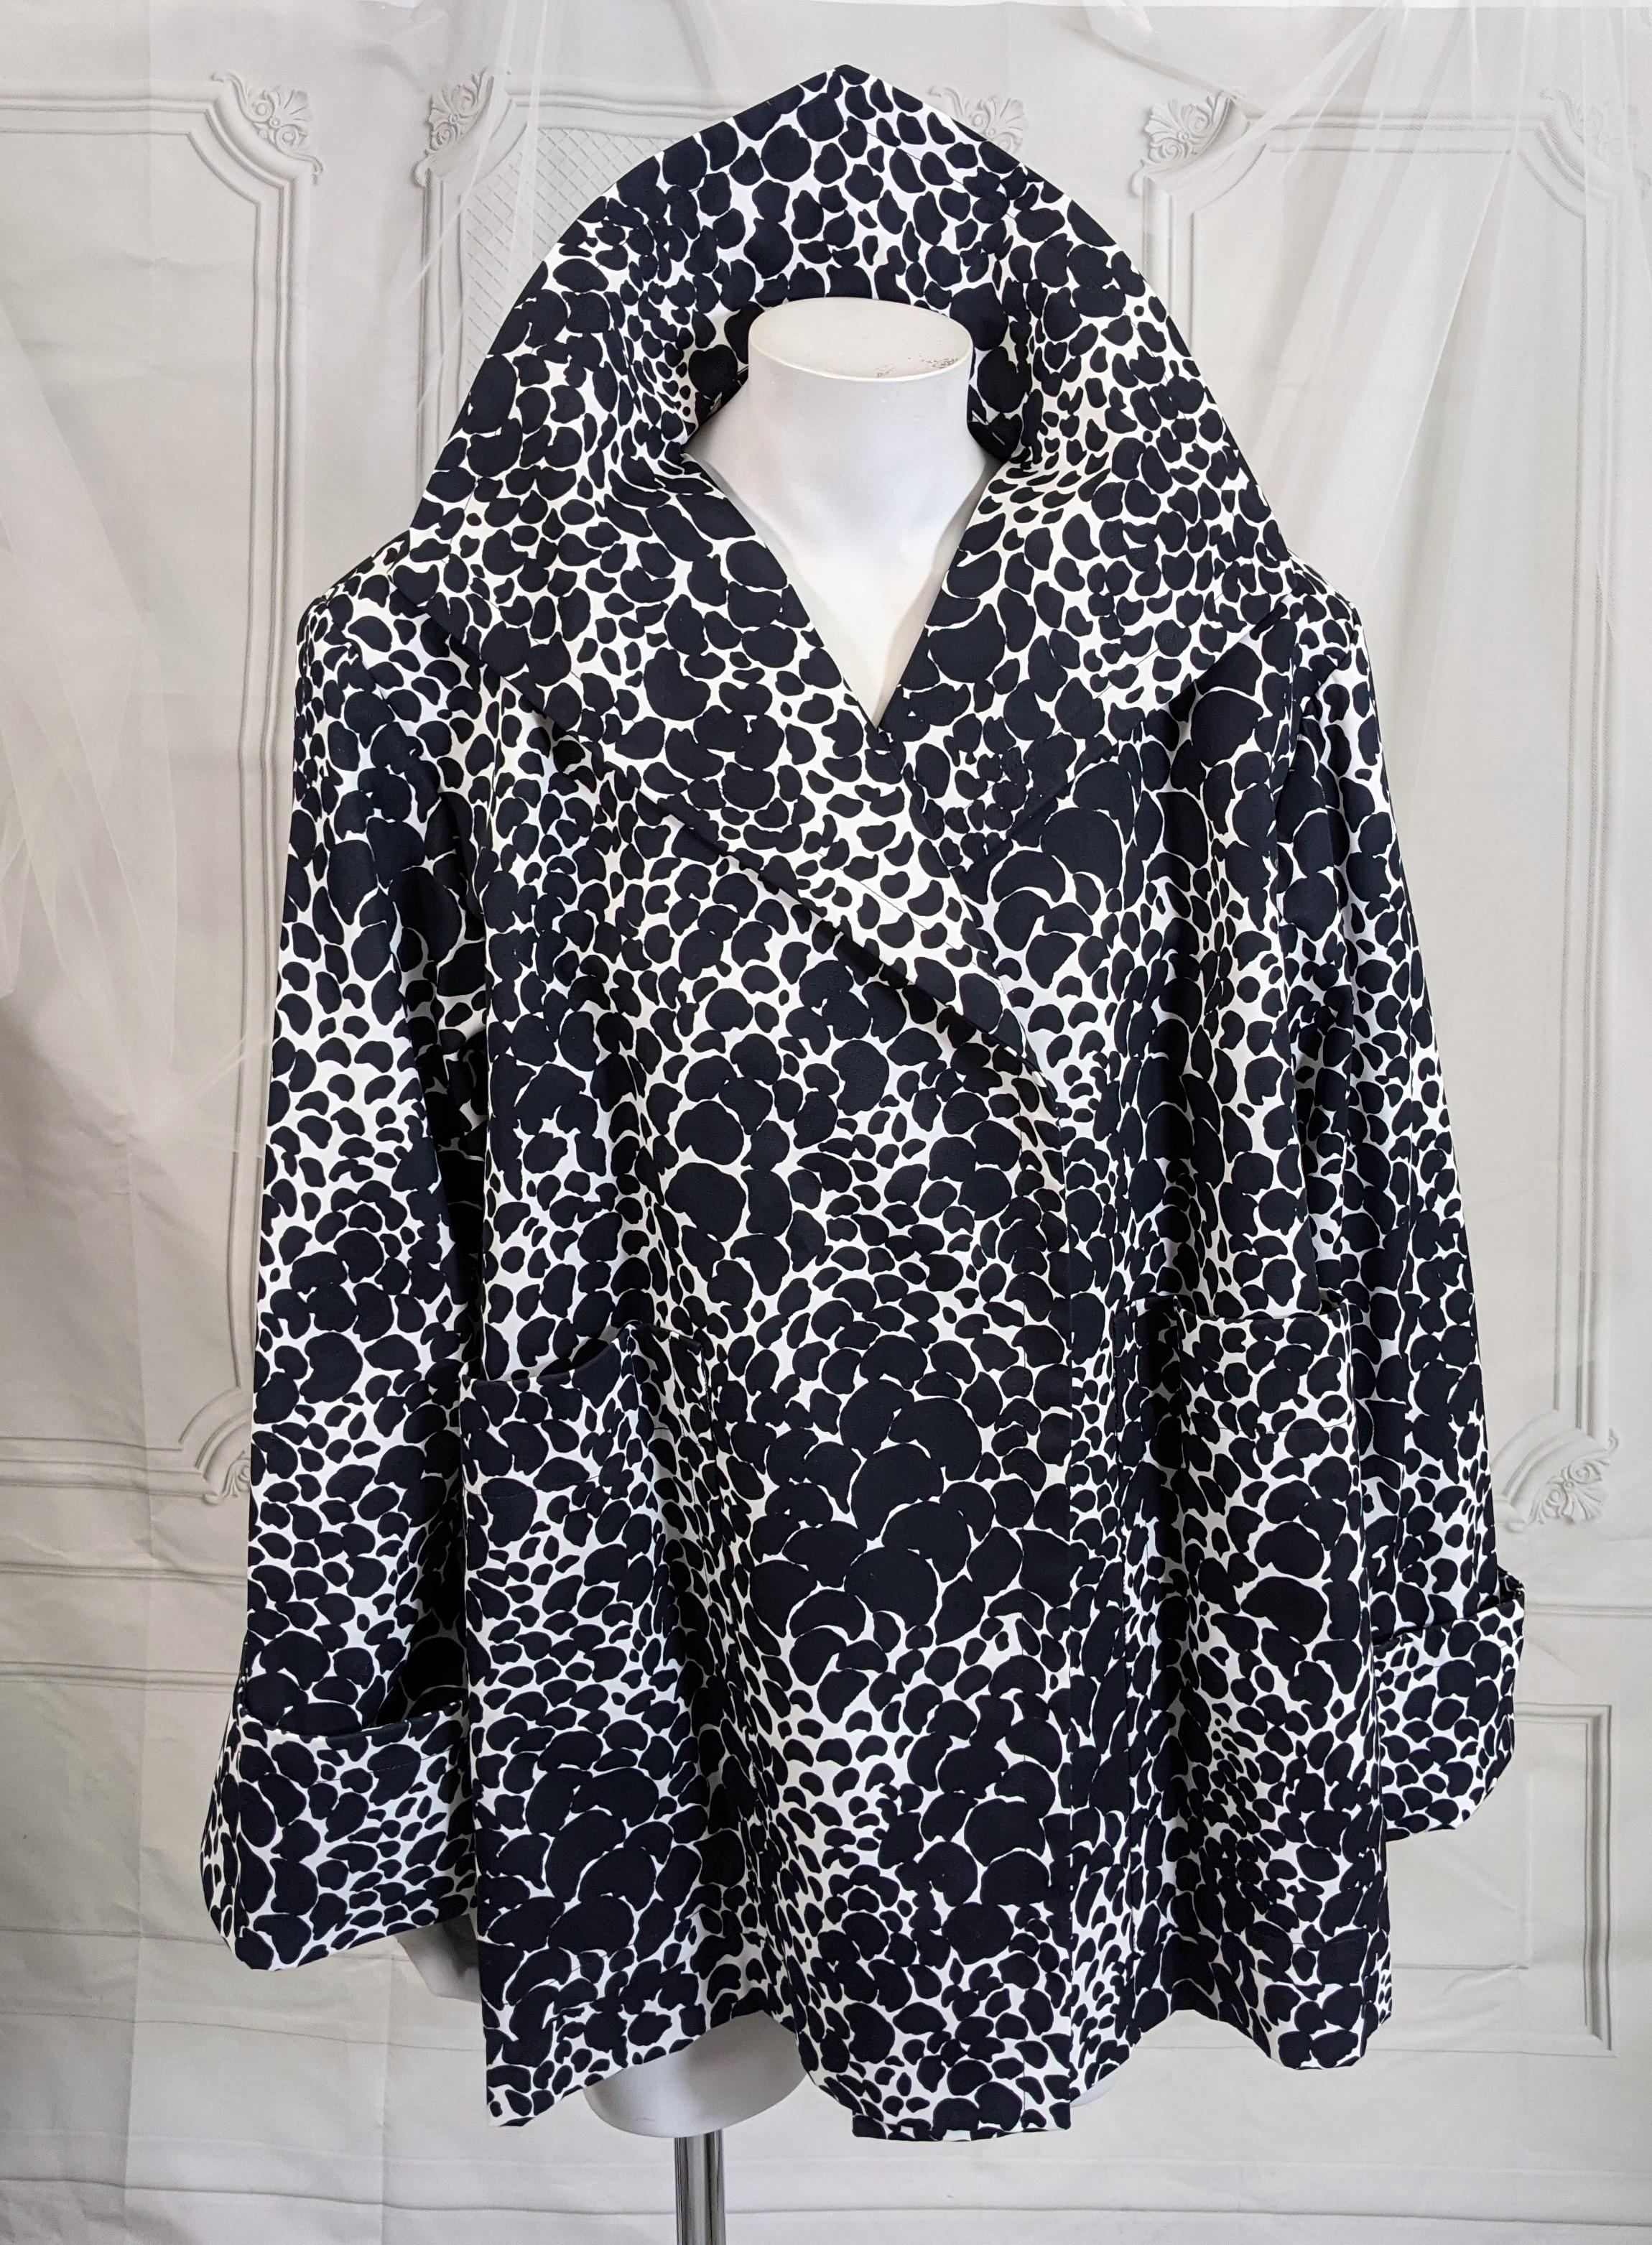 Yves Saint Laurent Baumwollsatin-Jacke mit abstraktem Blumendruck in Schwarz/Weiß, geeignet für den Tag oder den Abend. Vollständig geschnittener, vielseitiger Mantel im Swing-Stil mit breiten Schultern, großen aufgesetzten Taschen und weiten Ärmeln